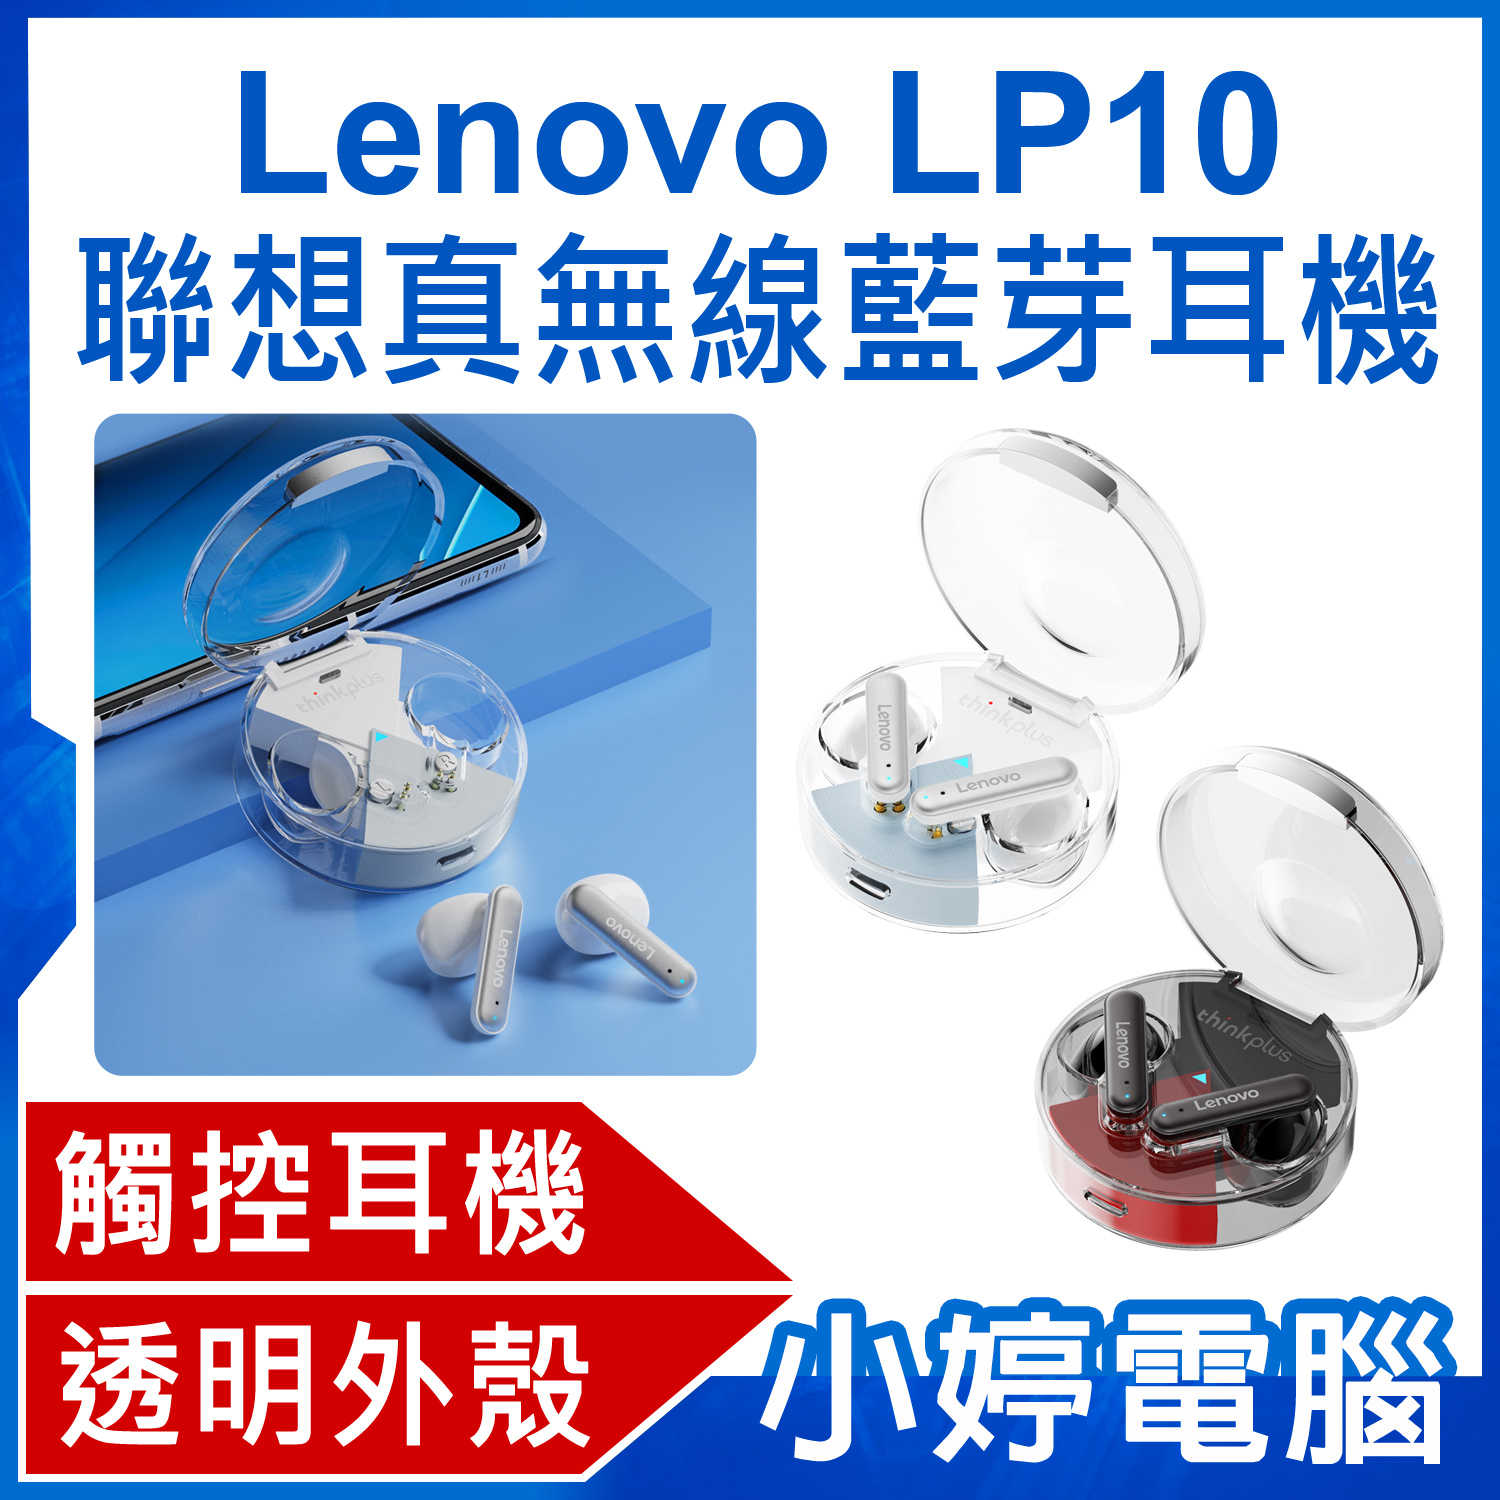 【小婷電腦】Lenovo LP10 聯想真無線藍芽耳機 半入耳式 遊戲音樂降噪低延遲 智慧觸控 透明外殼